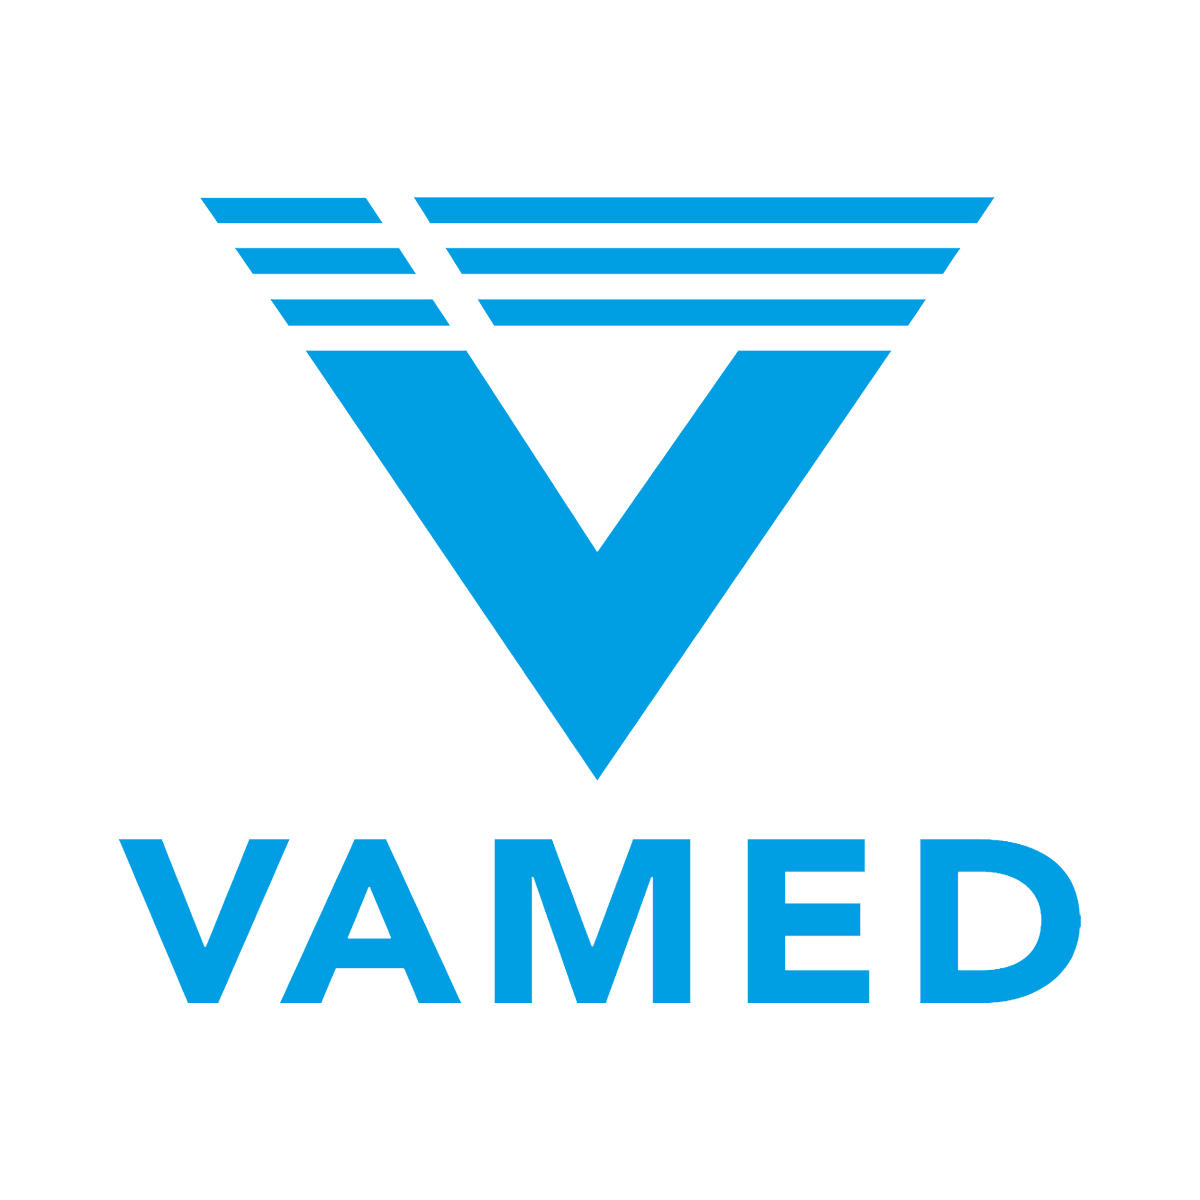 VAMED Klinik Hattingen in Hattingen an der Ruhr - Logo